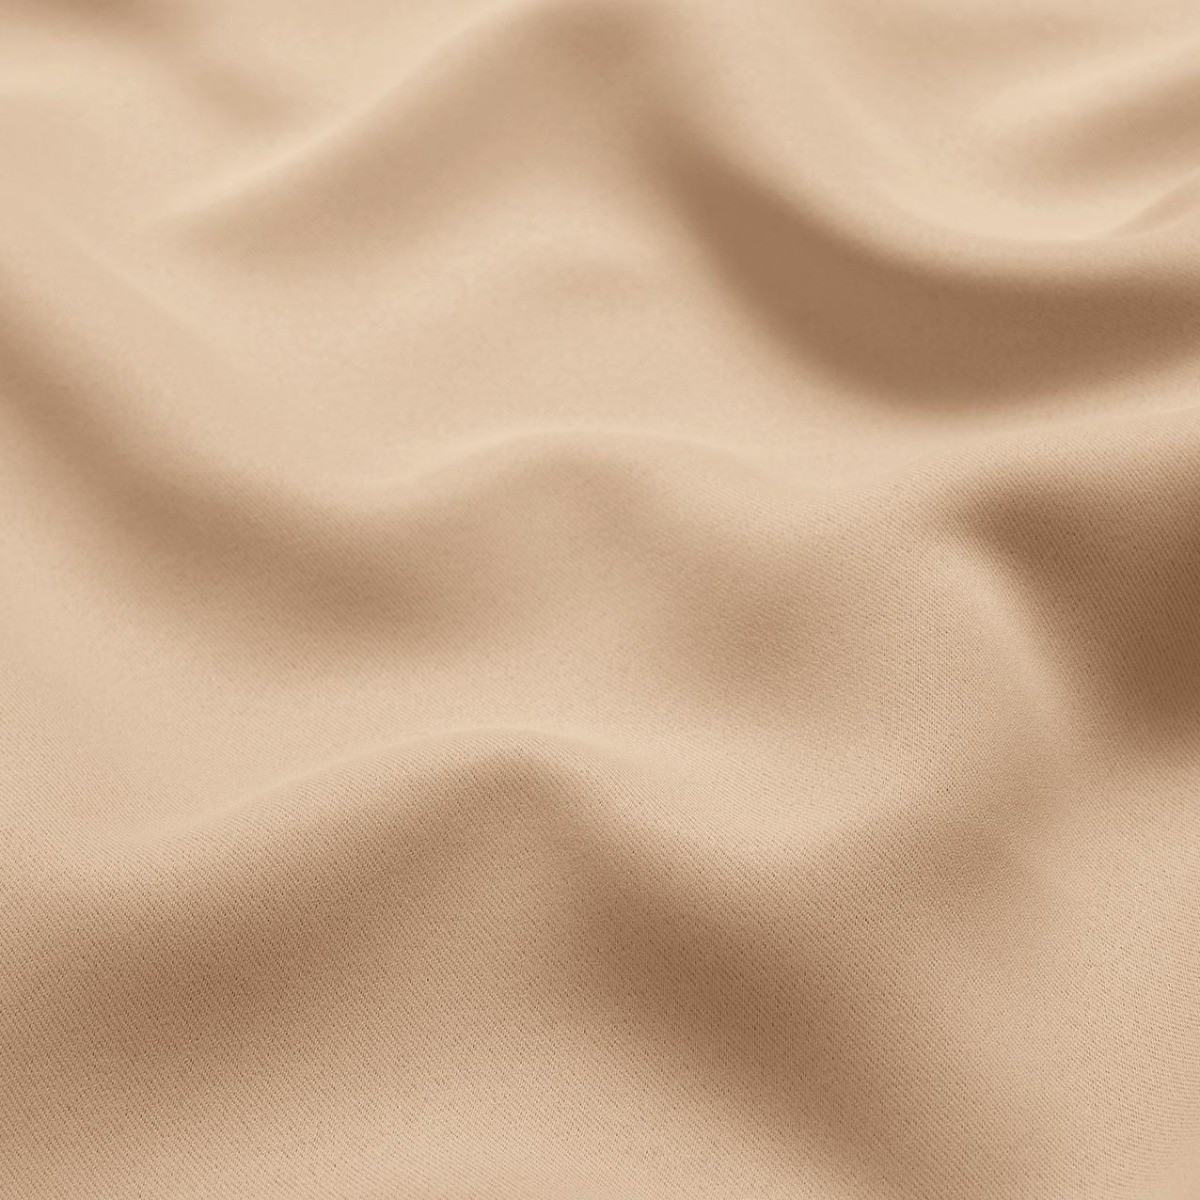  Универсальная портьерная ткань NOTTE GOLD, ширина 280 см  - Фото